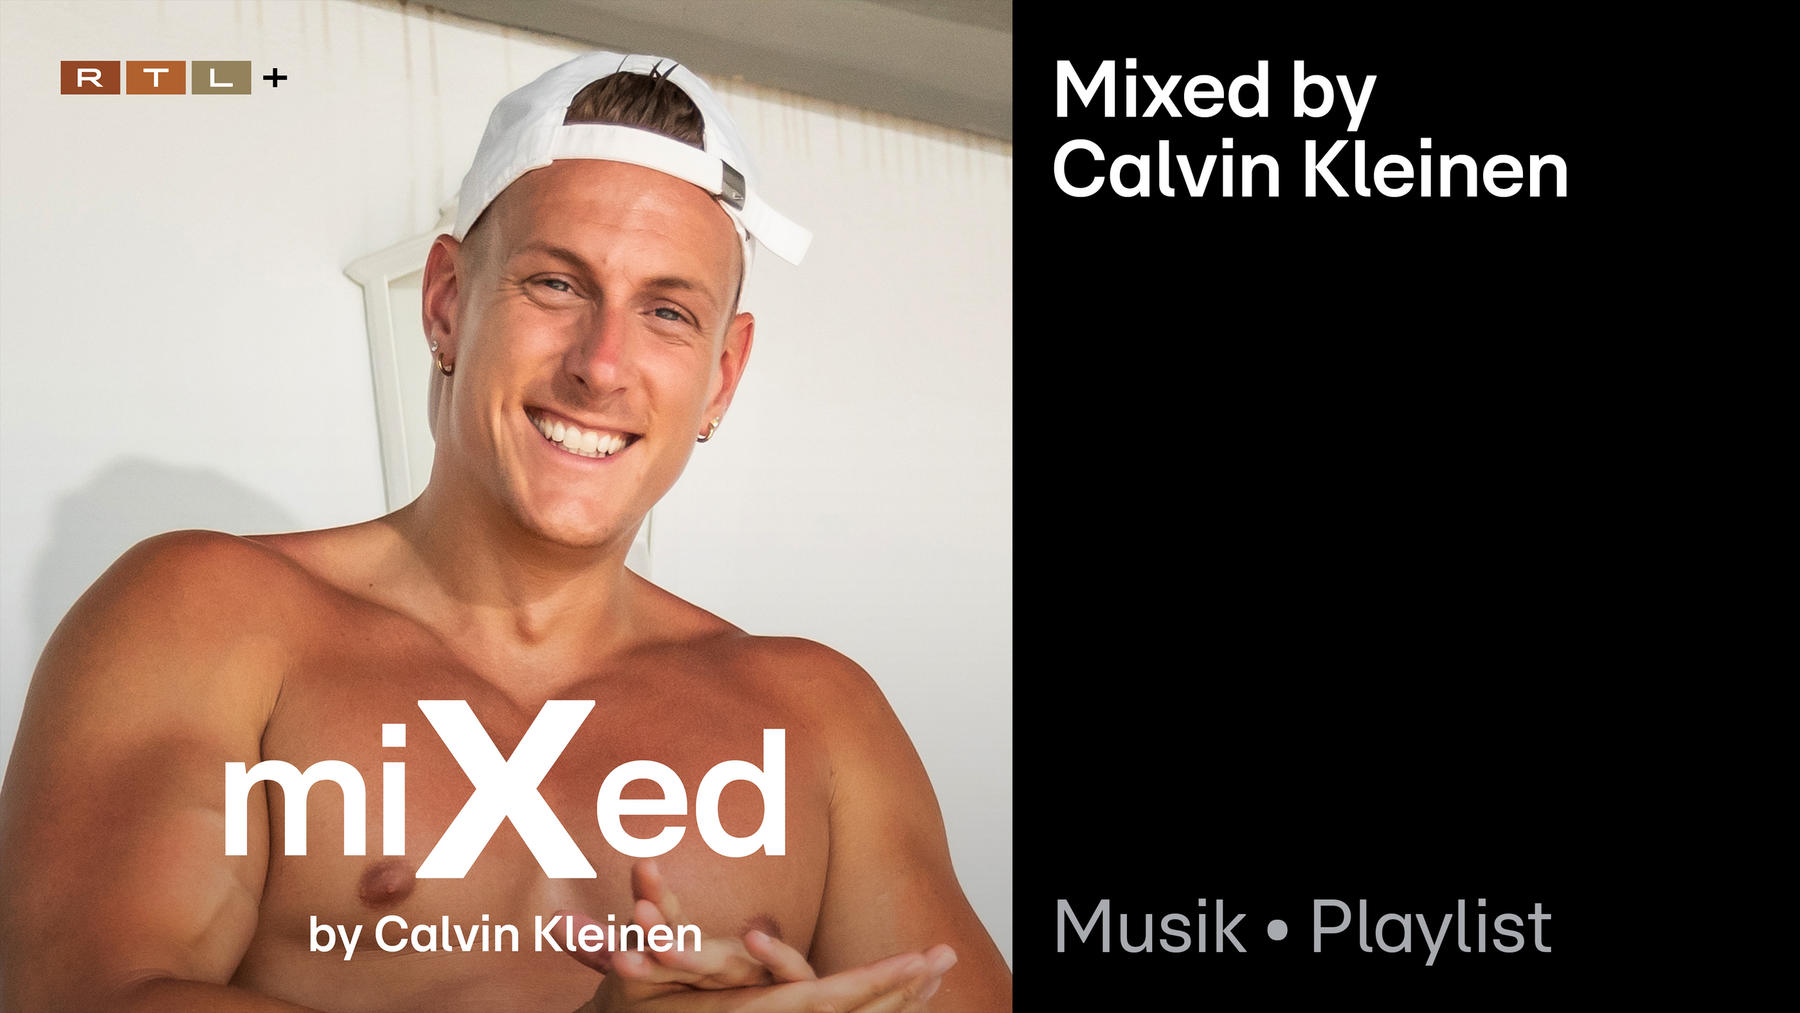 Mixed by Calvin Kleinen Playlist